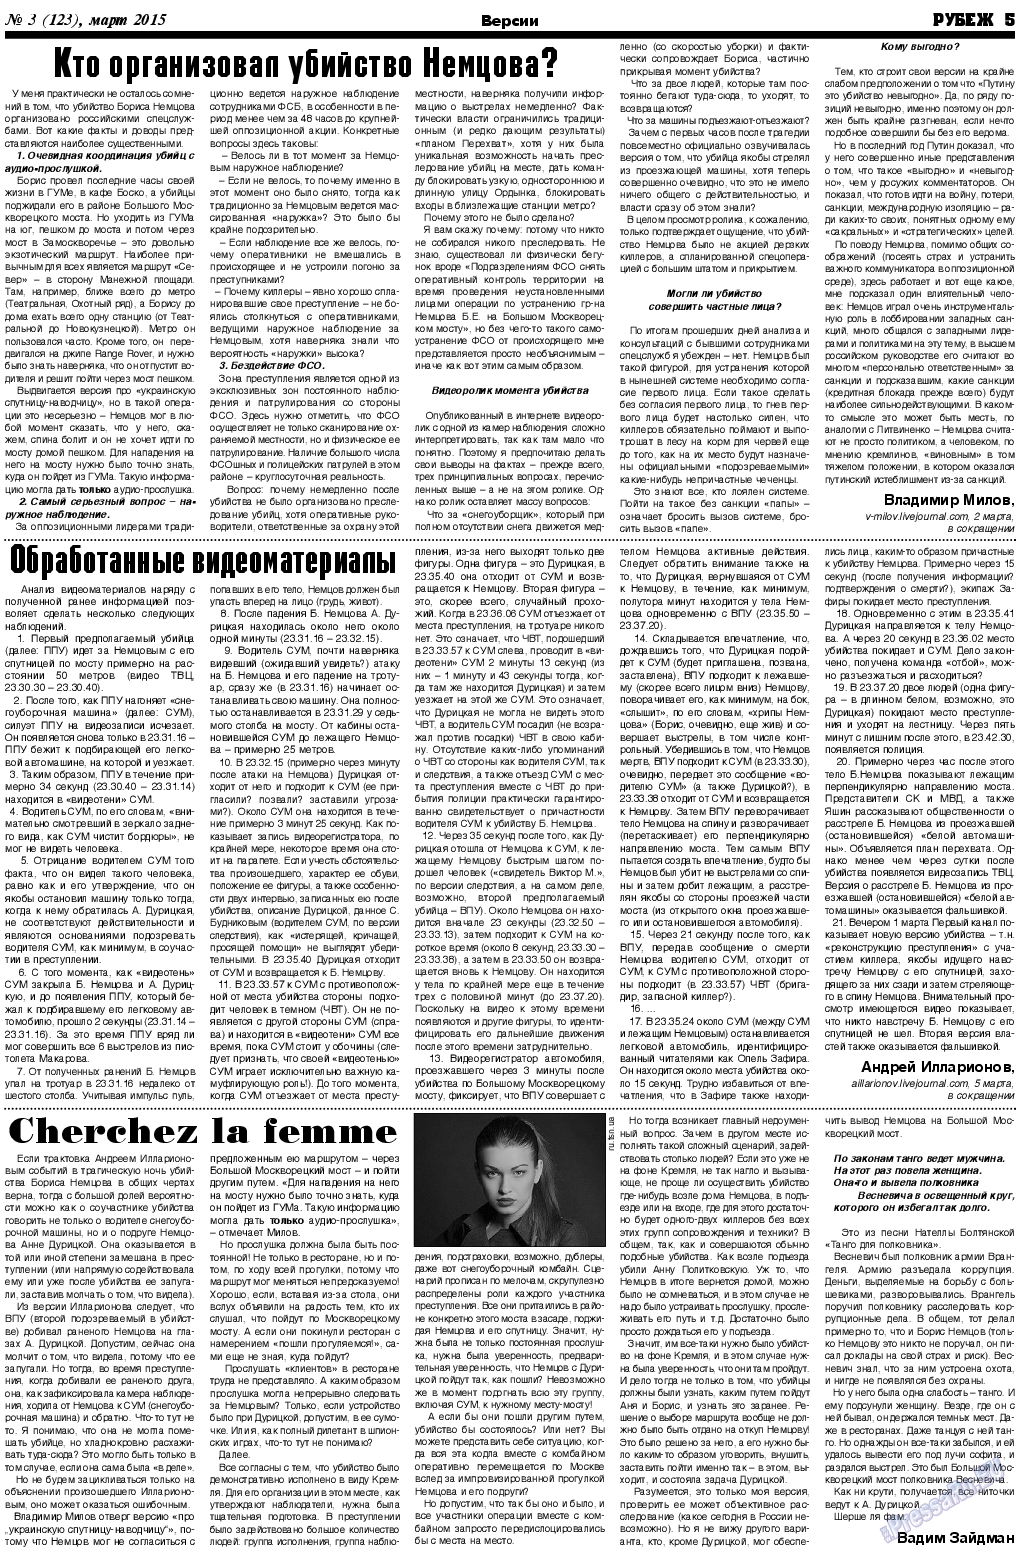 Рубеж (газета). 2015 год, номер 3, стр. 5